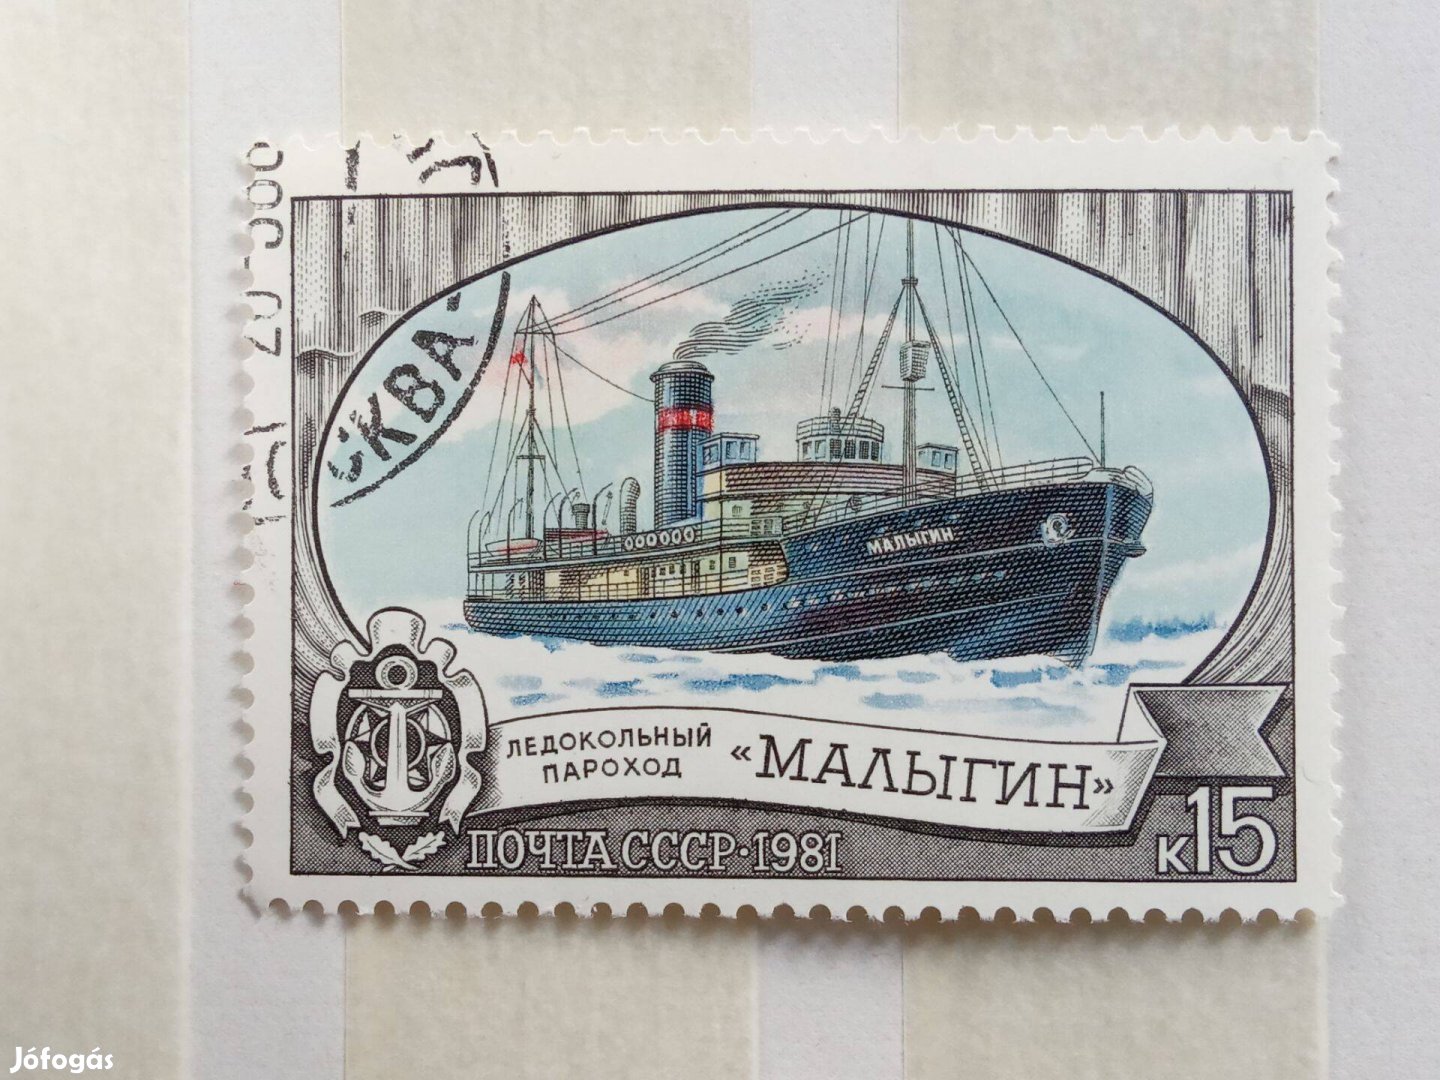 A Szovjetunió jégtörő flottája postatiszta bélyeg szívességi bélyegzés